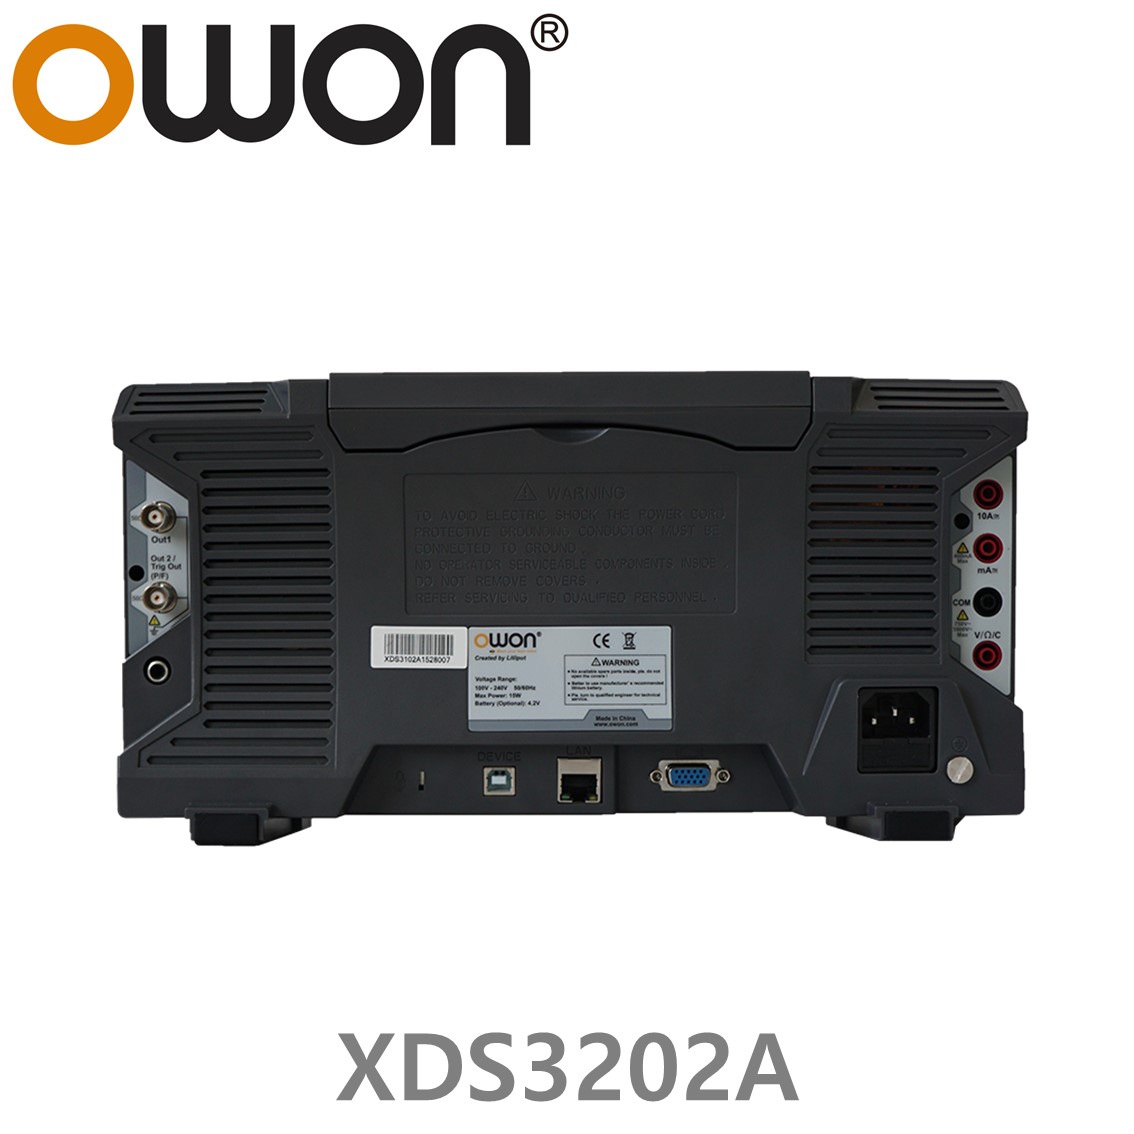 [ OWON ] XDS3202A 올인원 디지탈 오실로스코프 ( 200MHz, 2CH, 1GS/s, 데이타로깅, 멀티미터, 임의파형발생기 )